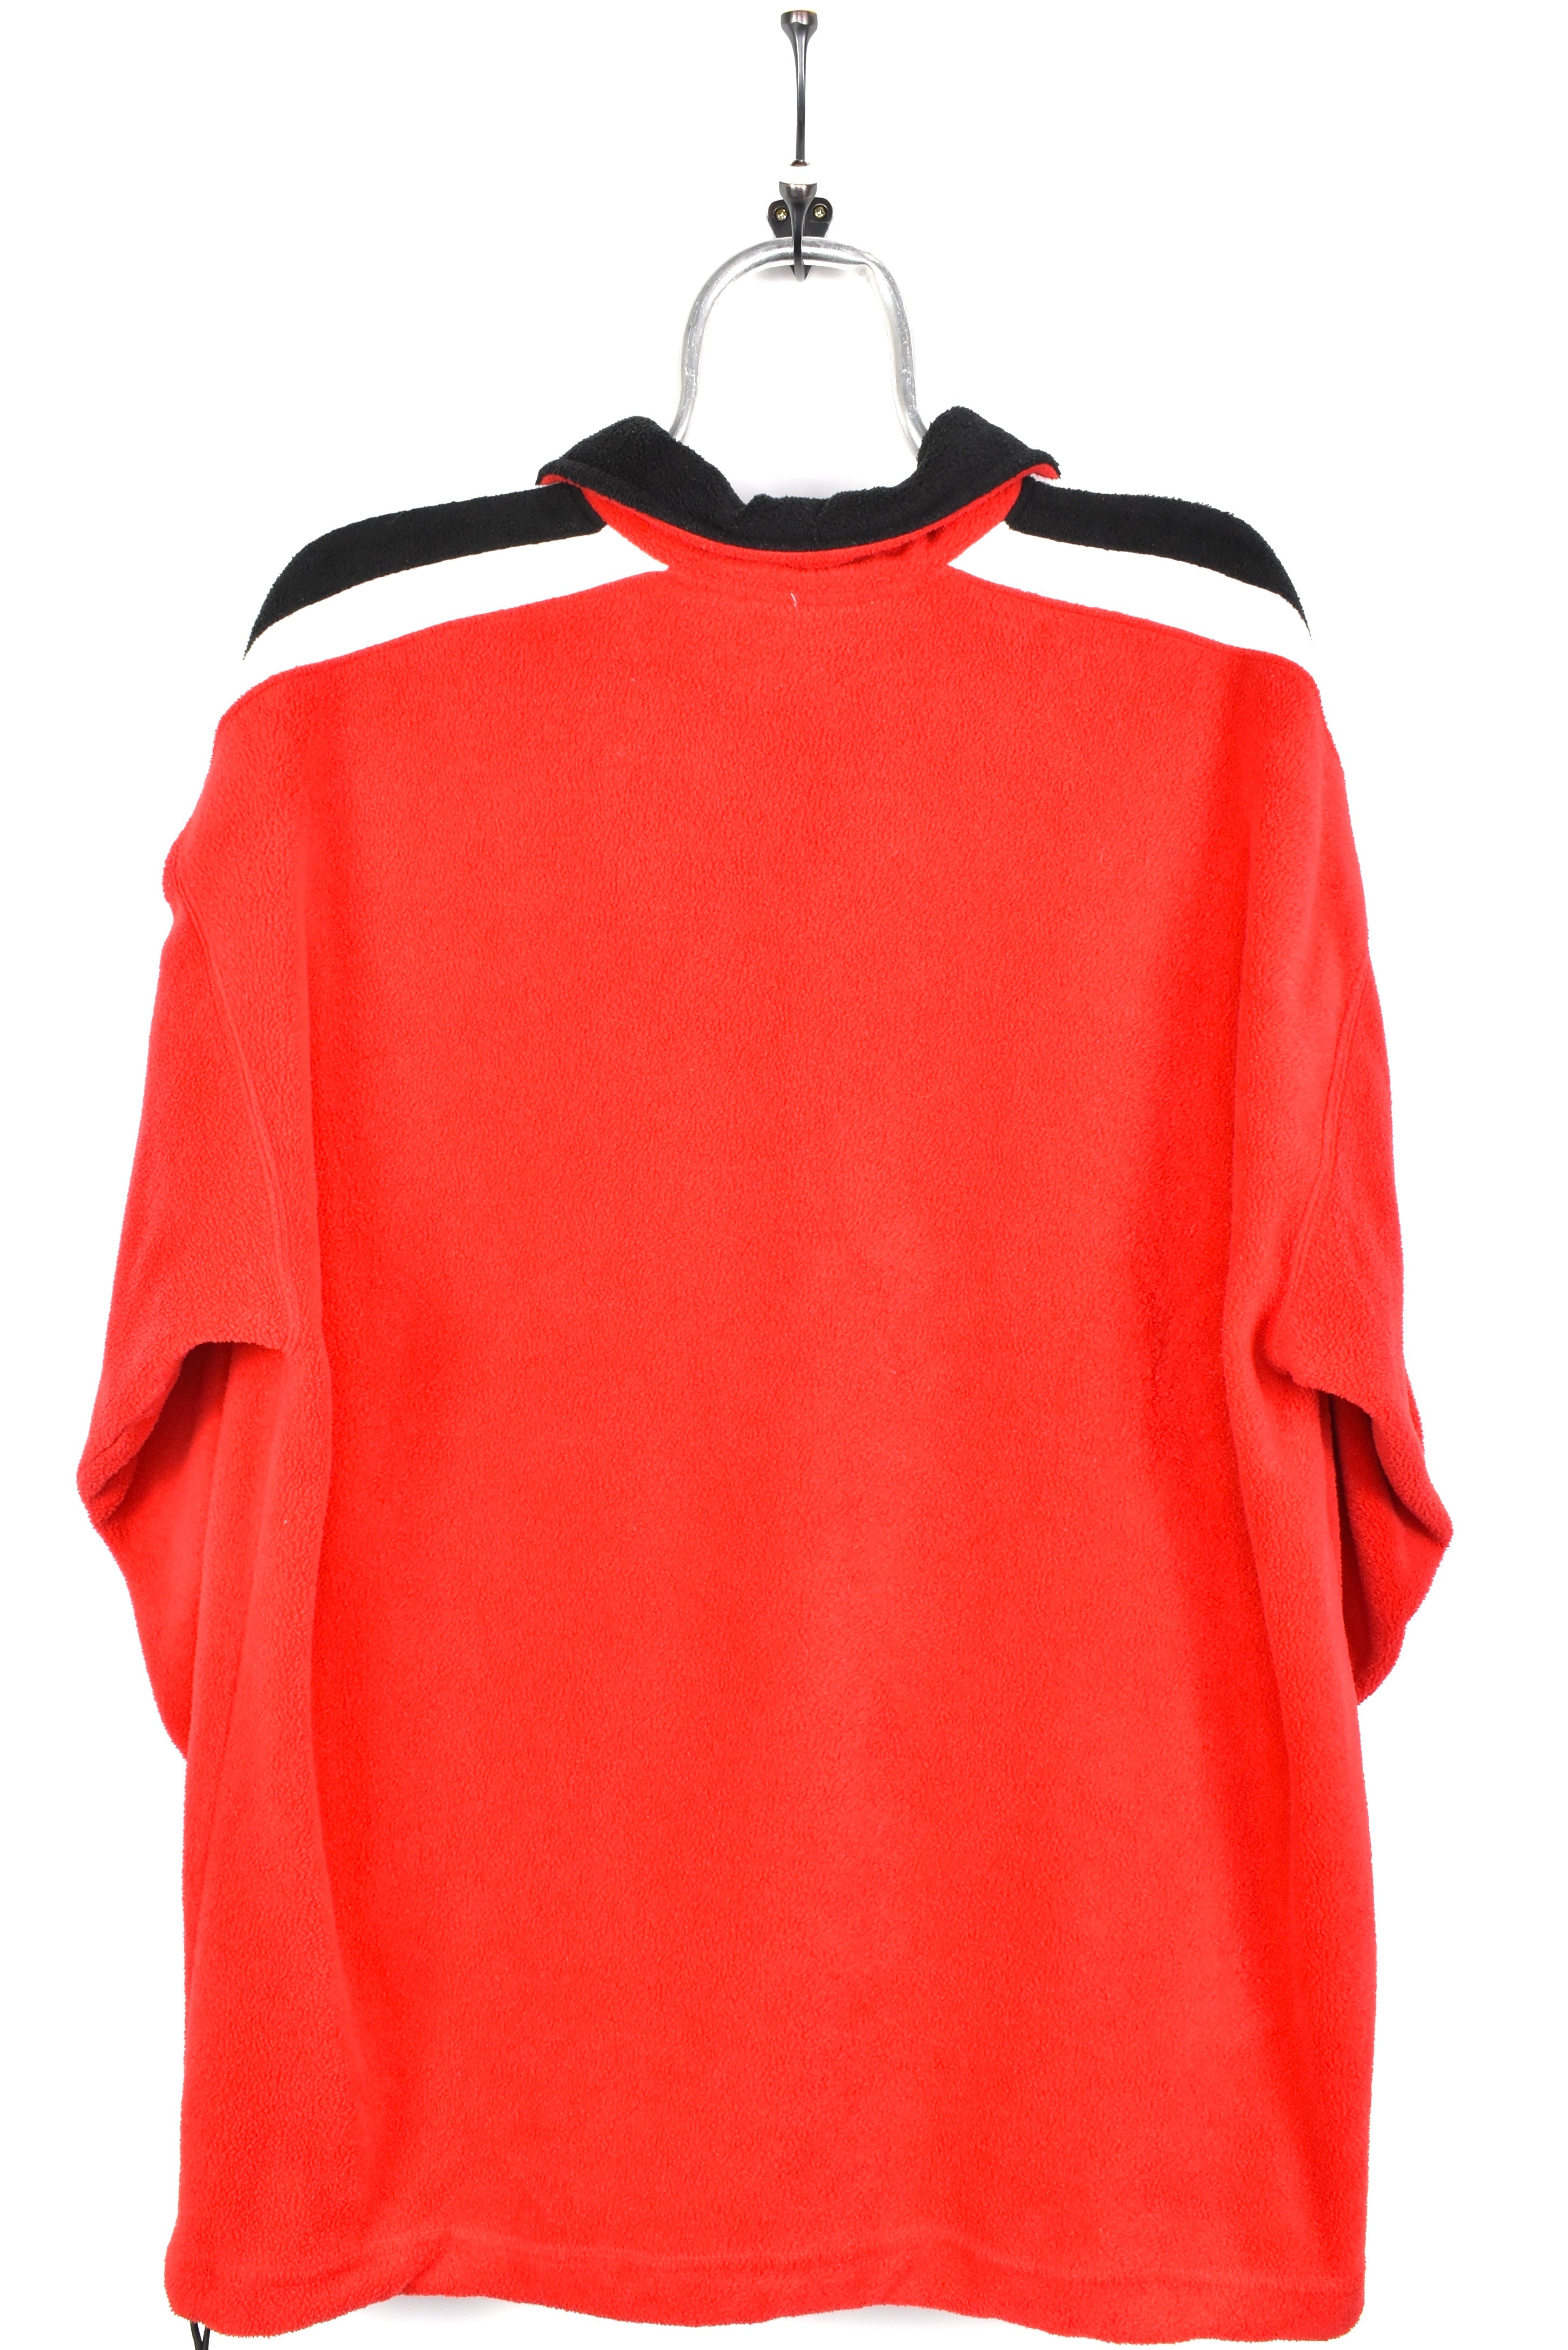 Vintage Tampa Bay Buccaneers fleece, NFL red embroidered 1/4 zip sweatshirt - AU XXL PRO SPORT